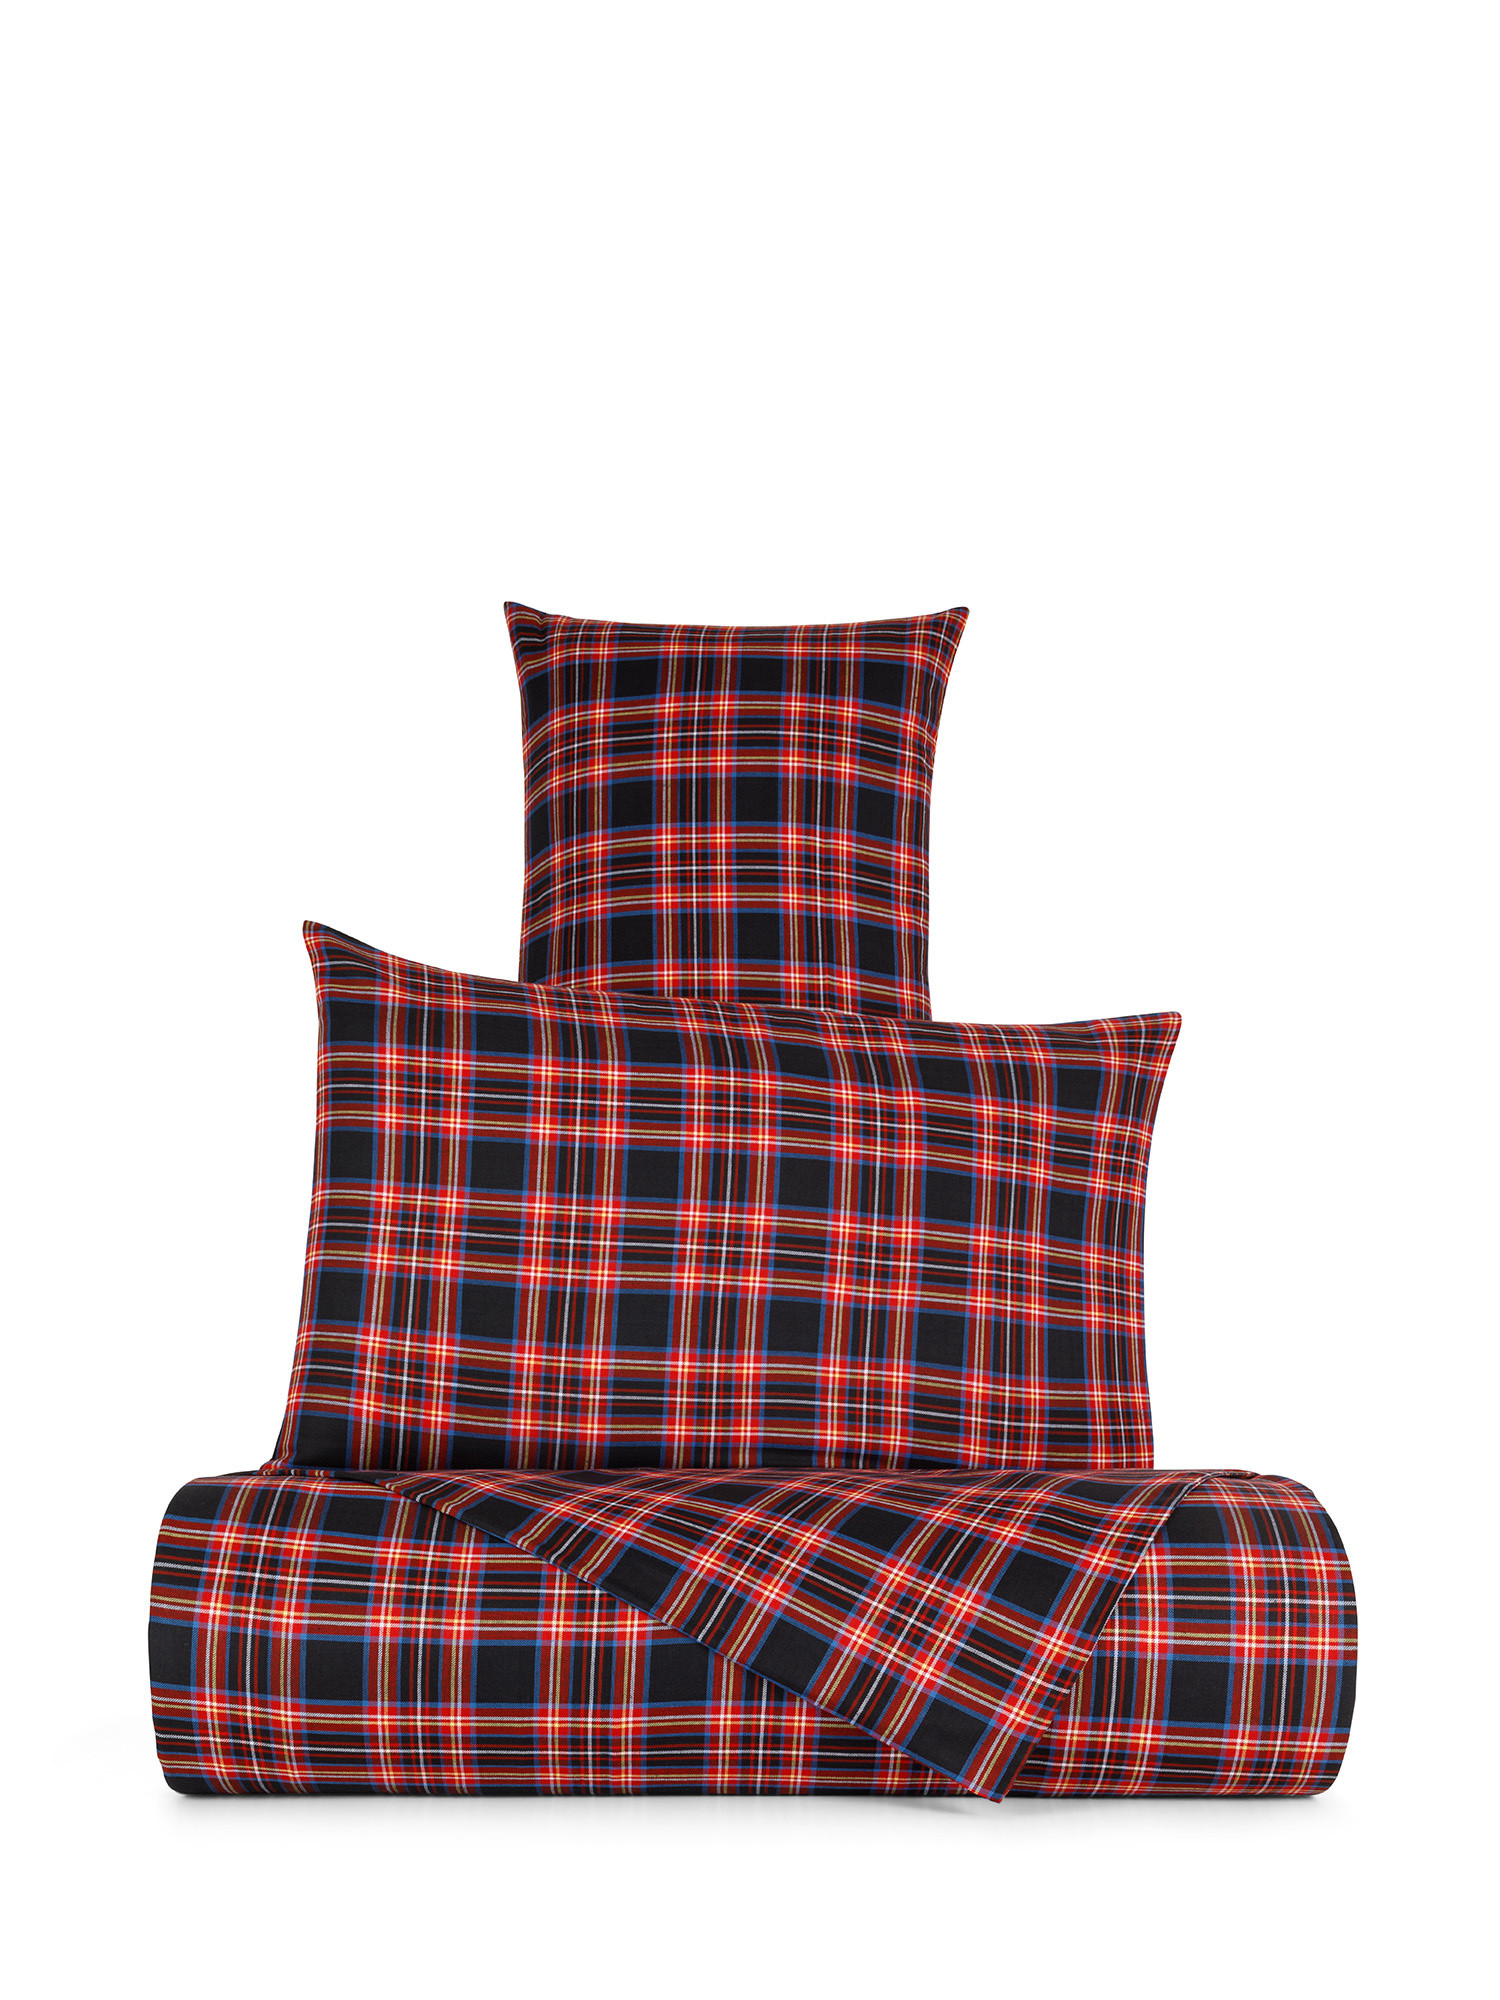 Warm tartan cotton pillowcase, Black, large image number 1